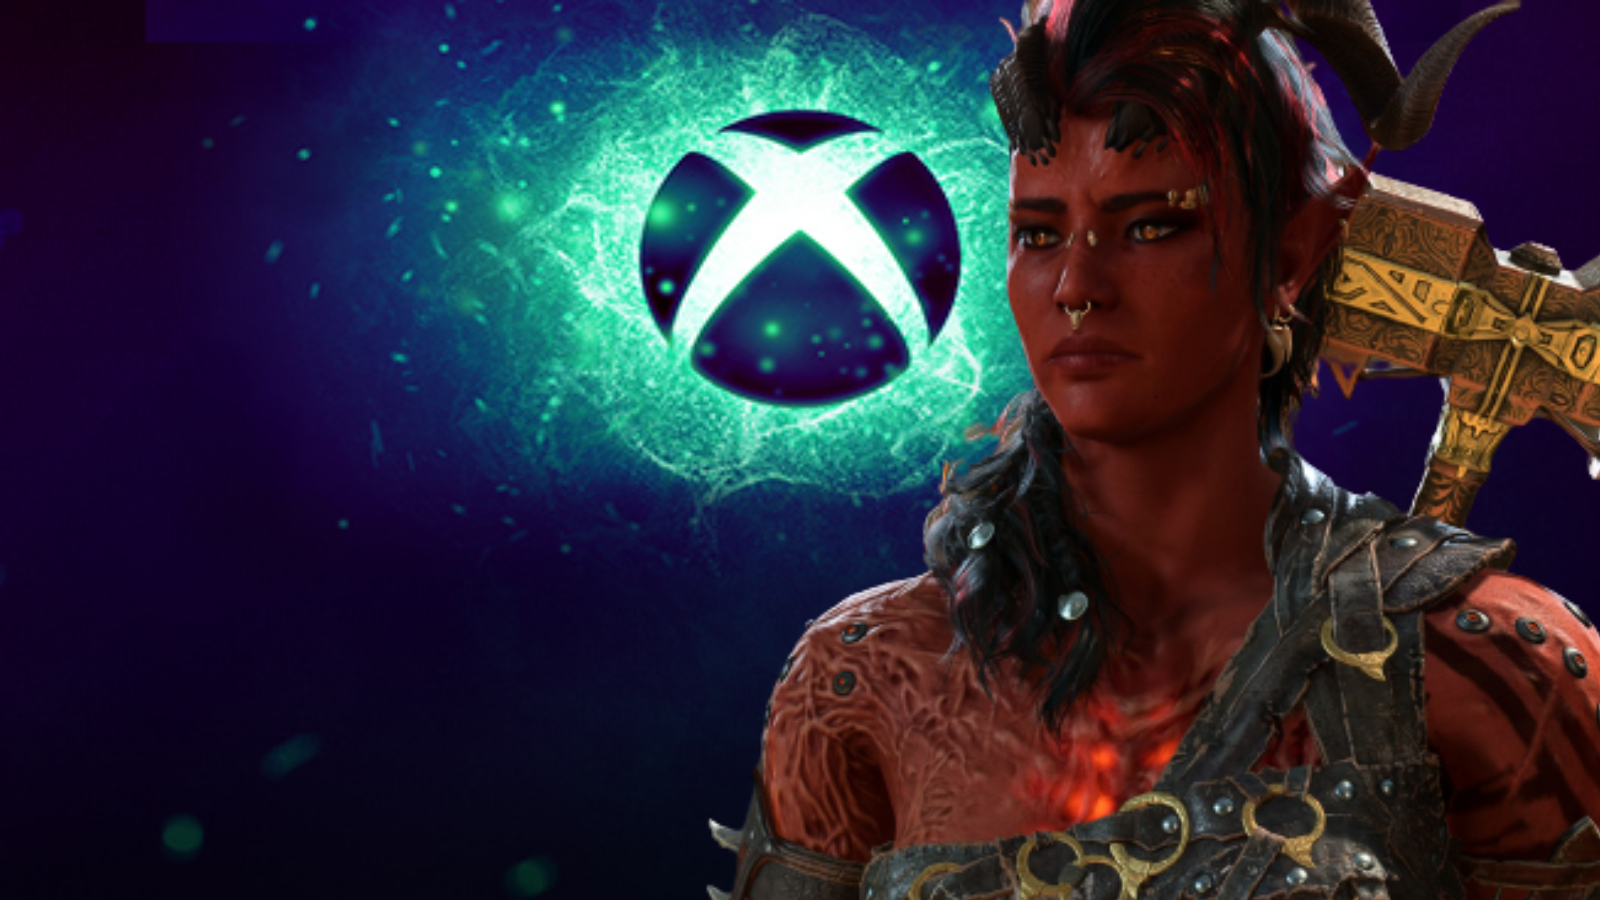 Baldur's Gate 3 shadow drops on Xbox following parity issues